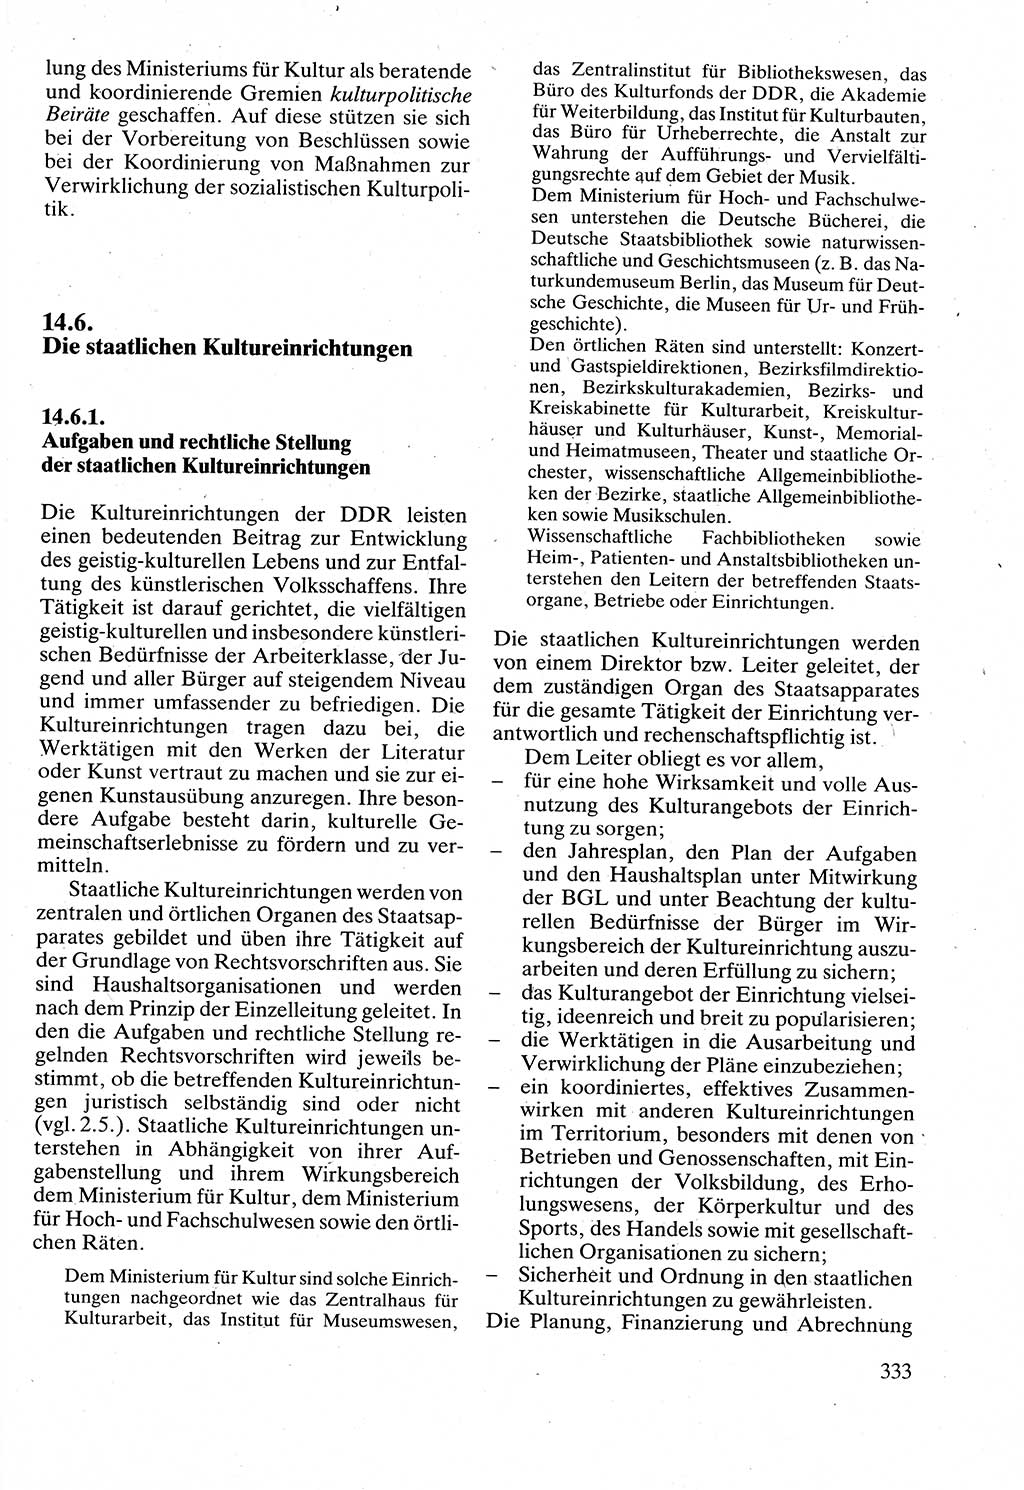 Verwaltungsrecht [Deutsche Demokratische Republik (DDR)], Lehrbuch 1988, Seite 333 (Verw.-R. DDR Lb. 1988, S. 333)